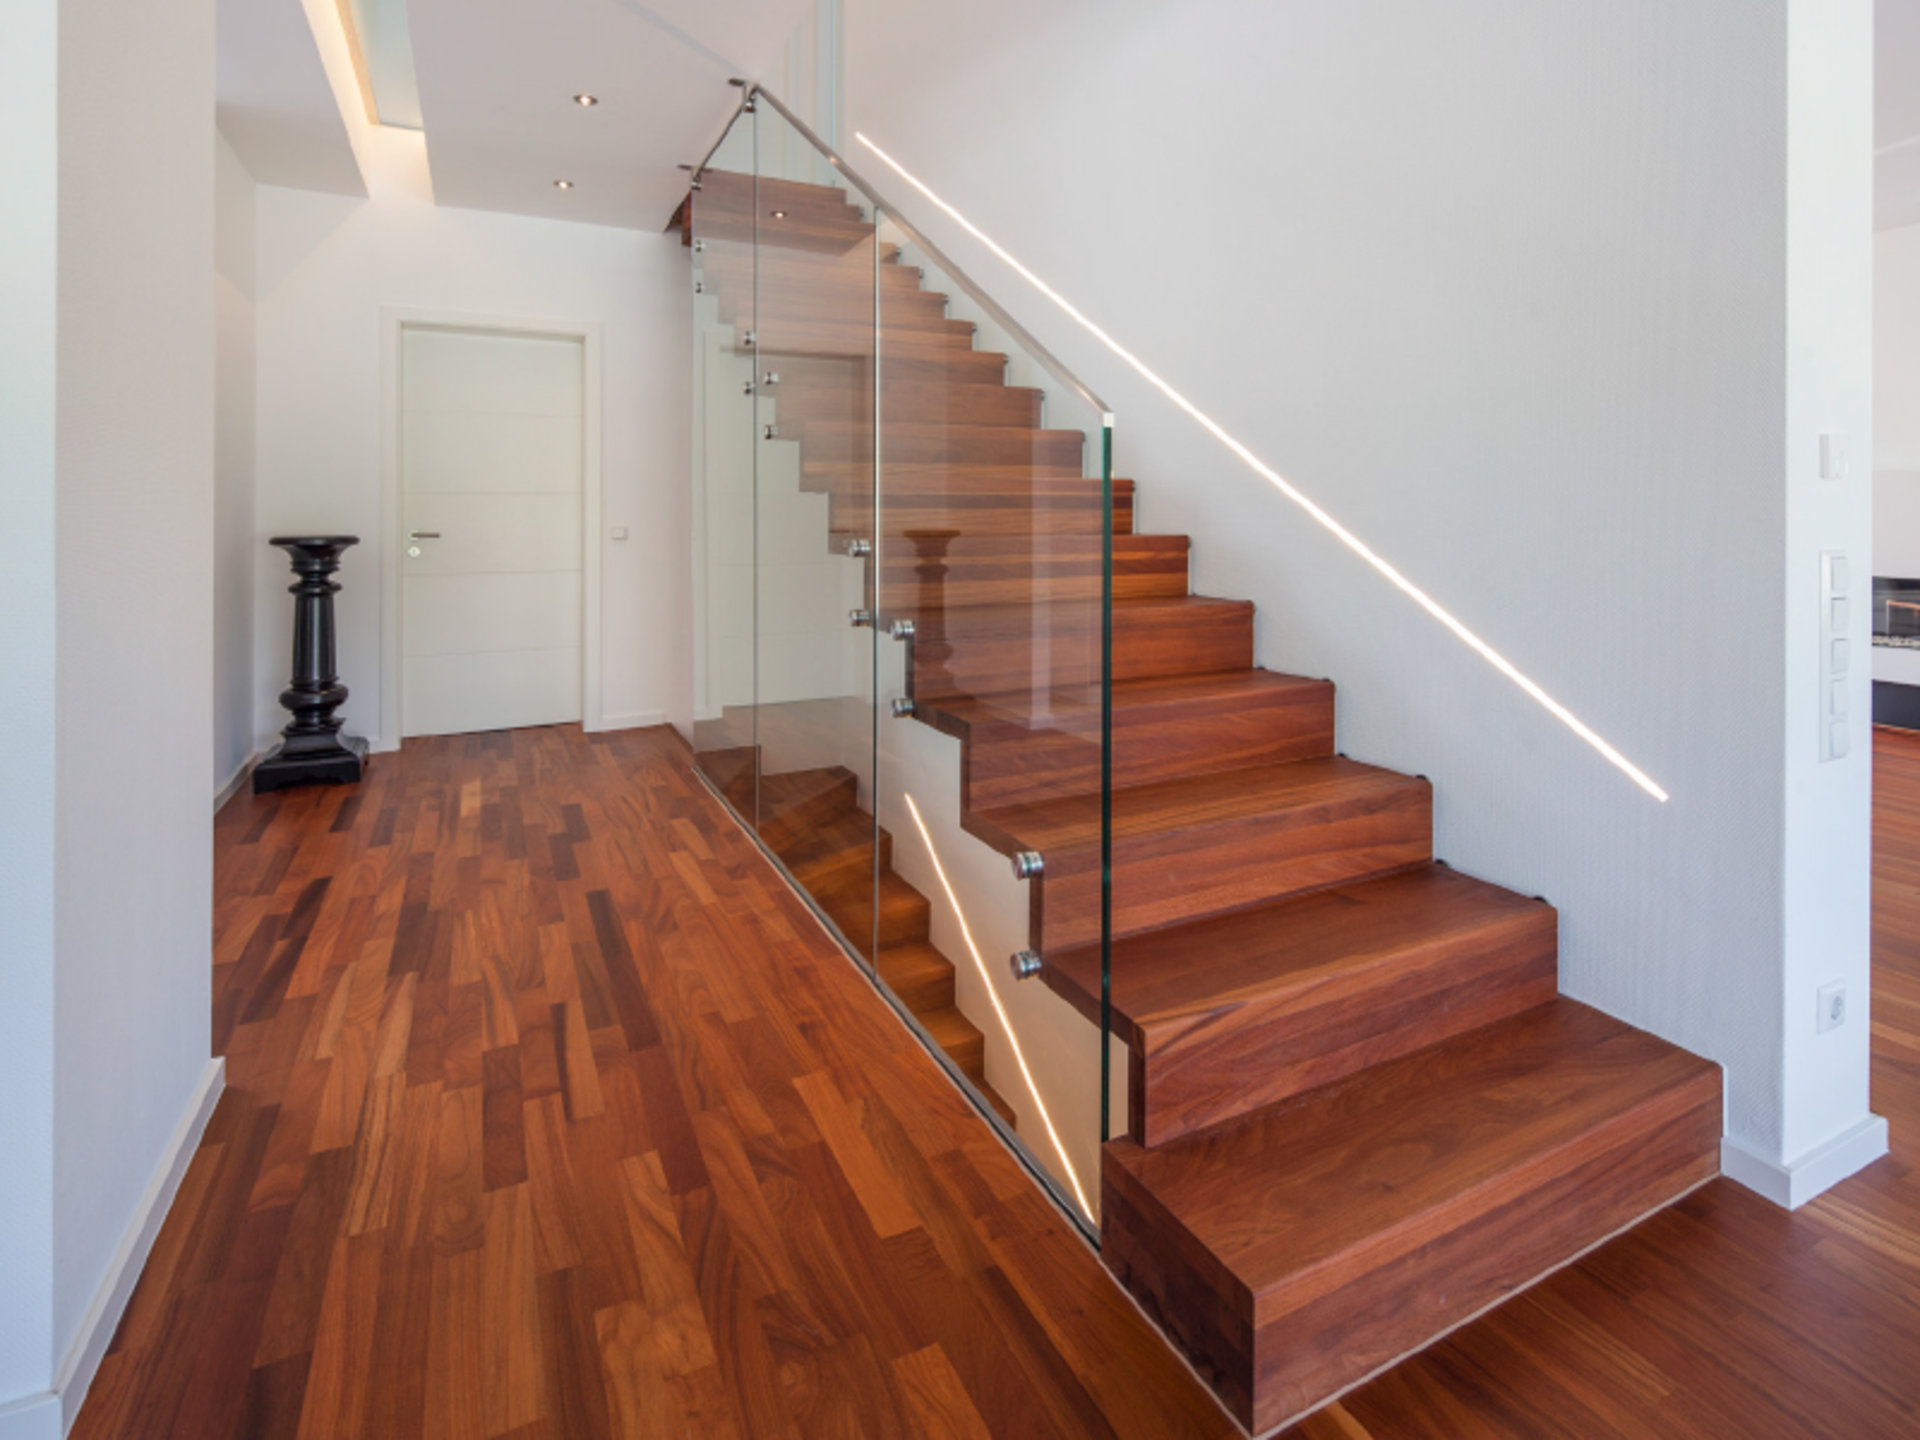 Haus Quandt – Treppe mit glasklarer Begrenzung (Foto: BAUMEISTER-HAUS)